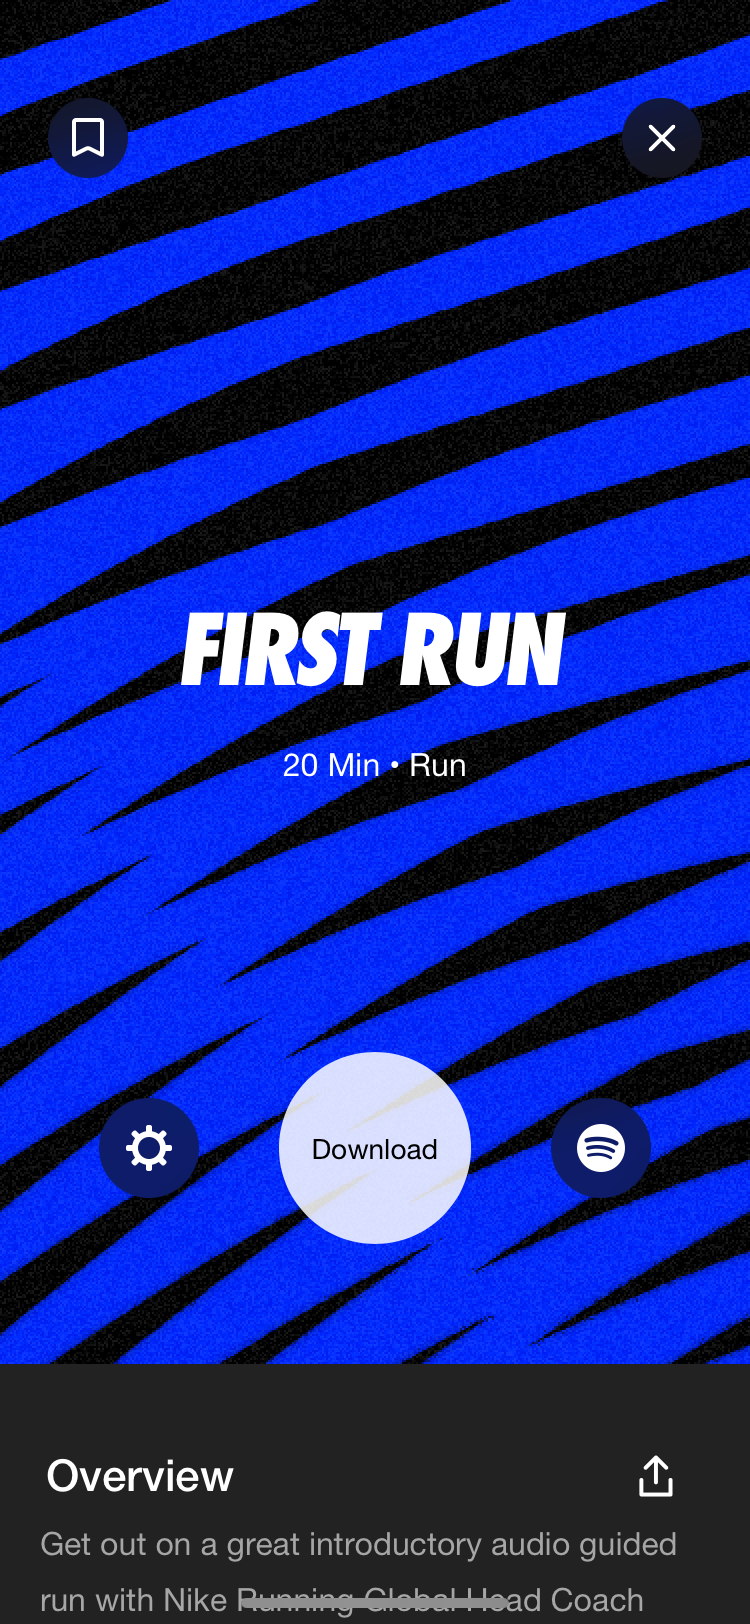 Nike Run Club app guided first run